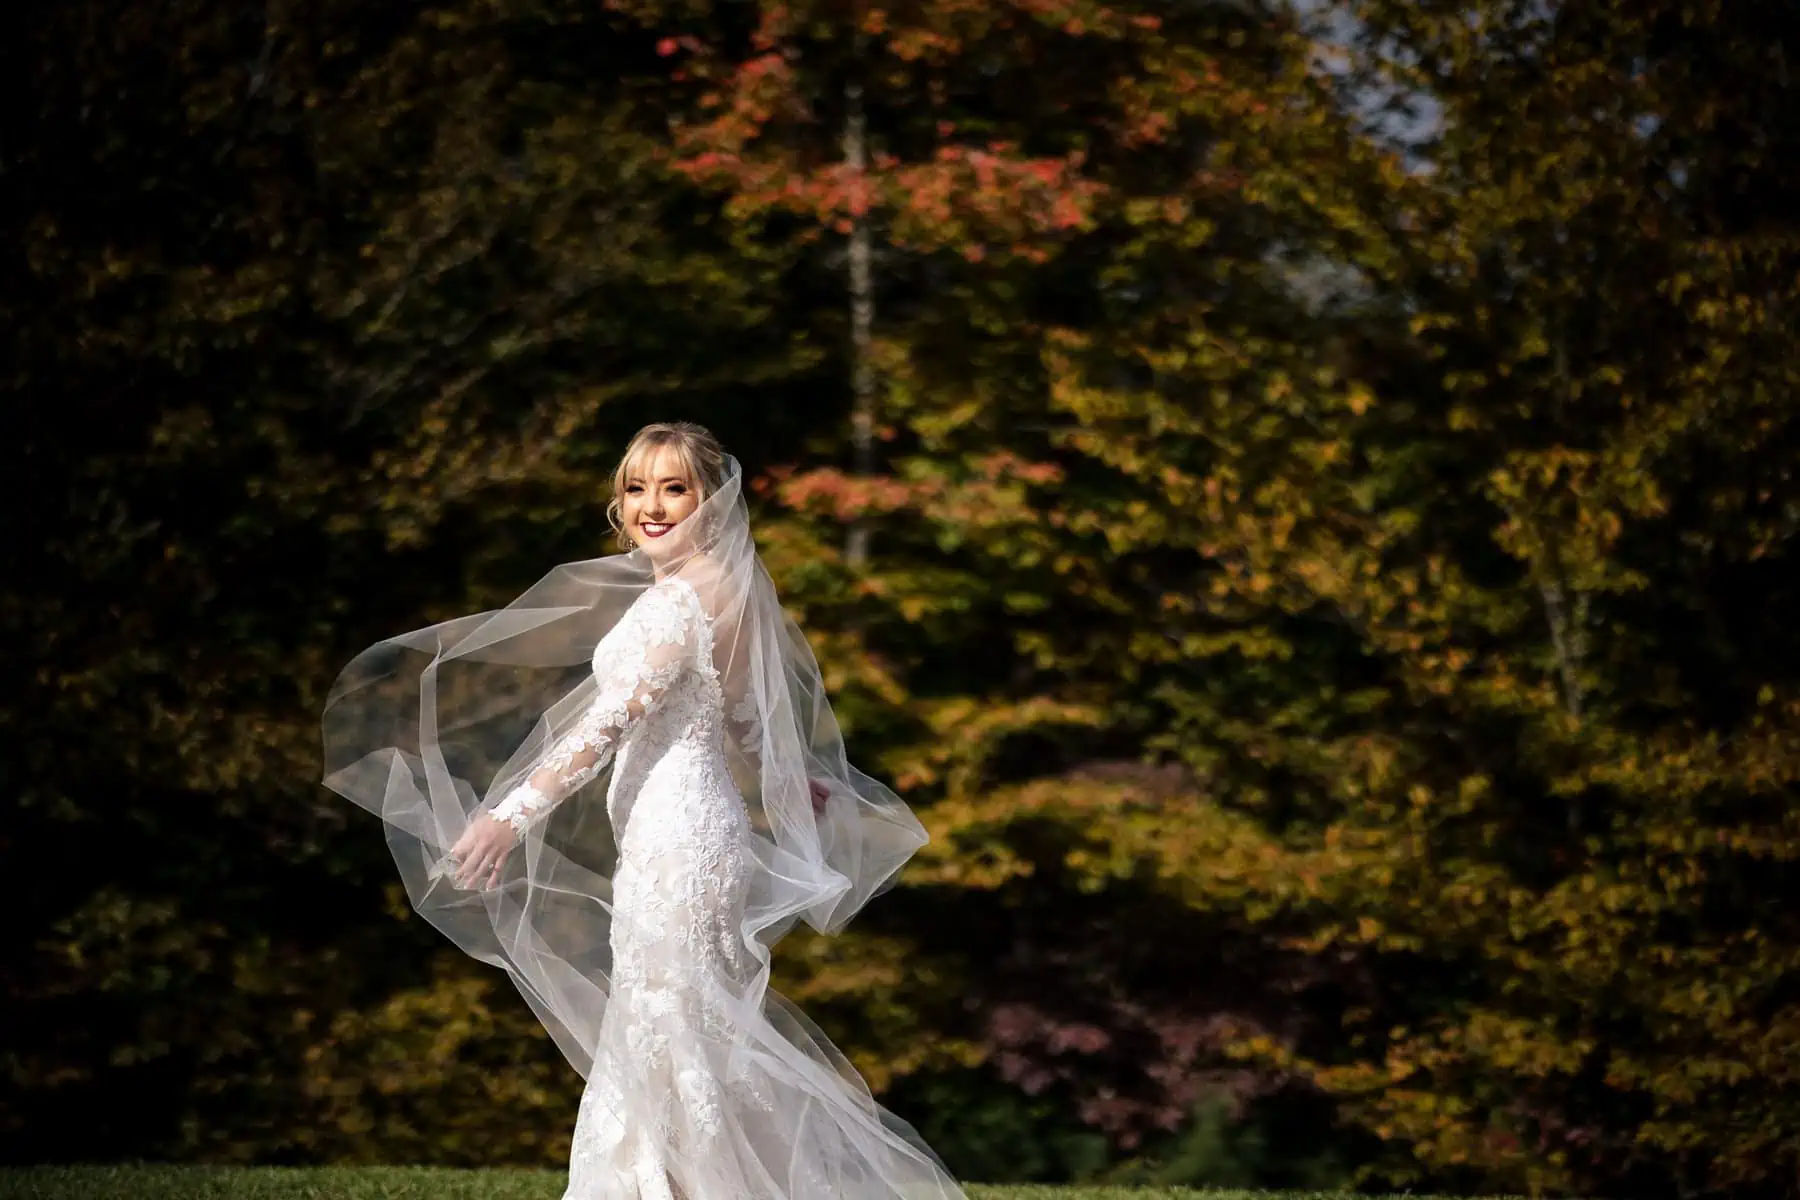 A bride wearing a long veil in a field.